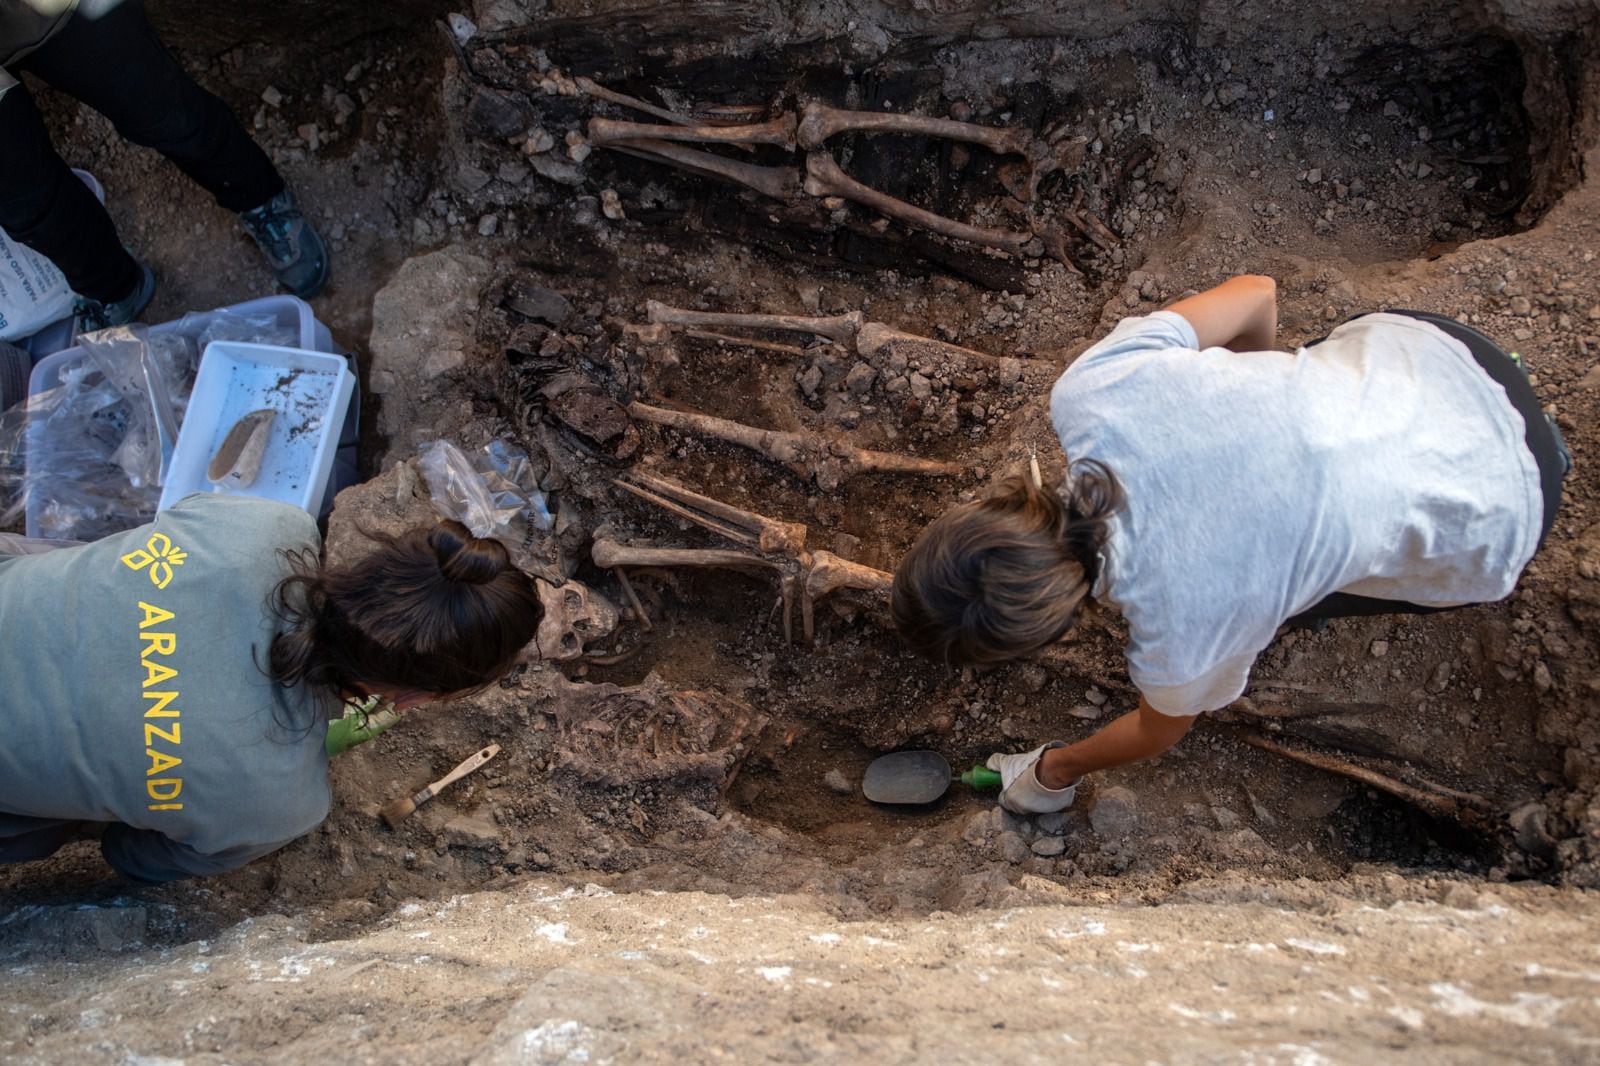 Parte del equipo que está llevando a cabo las exhumaciones en el cementerio parroquial de Colmenar Viejo, en Madrid. (Álvaro Minguito / Aranzadi)